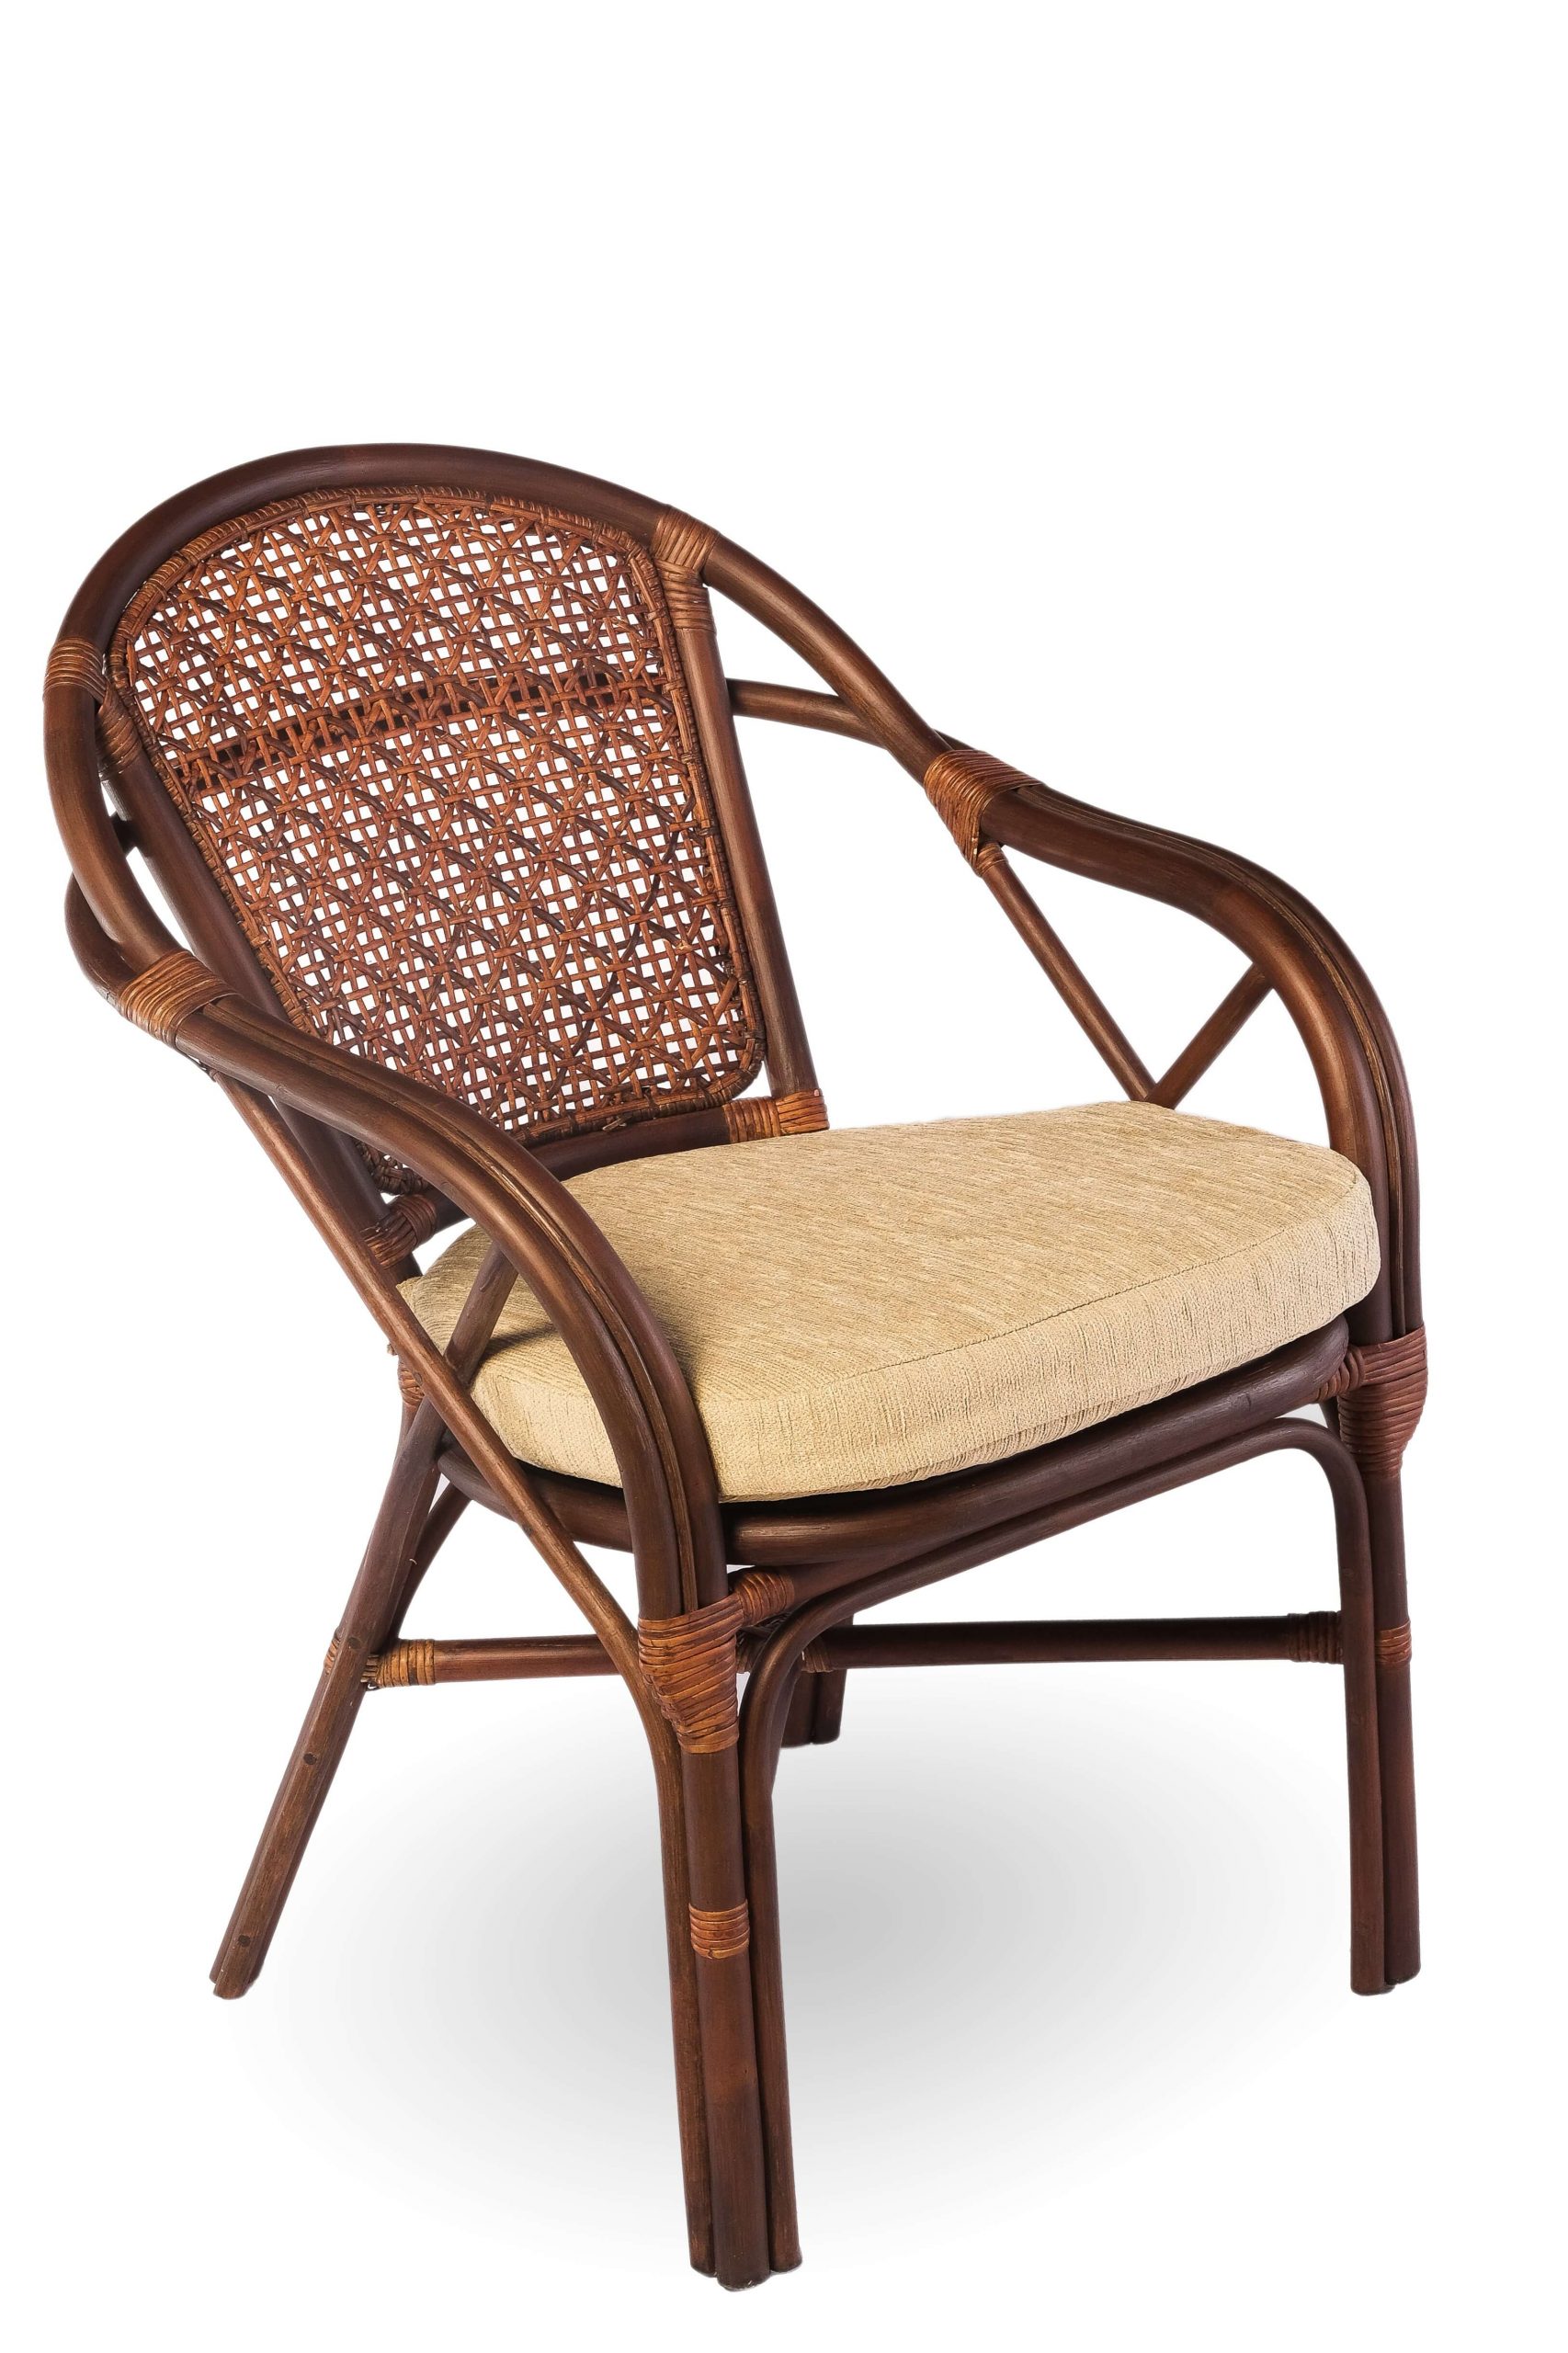 Комплект мебели из ротанга "Петани дуэт": два кресла и круглый столик 